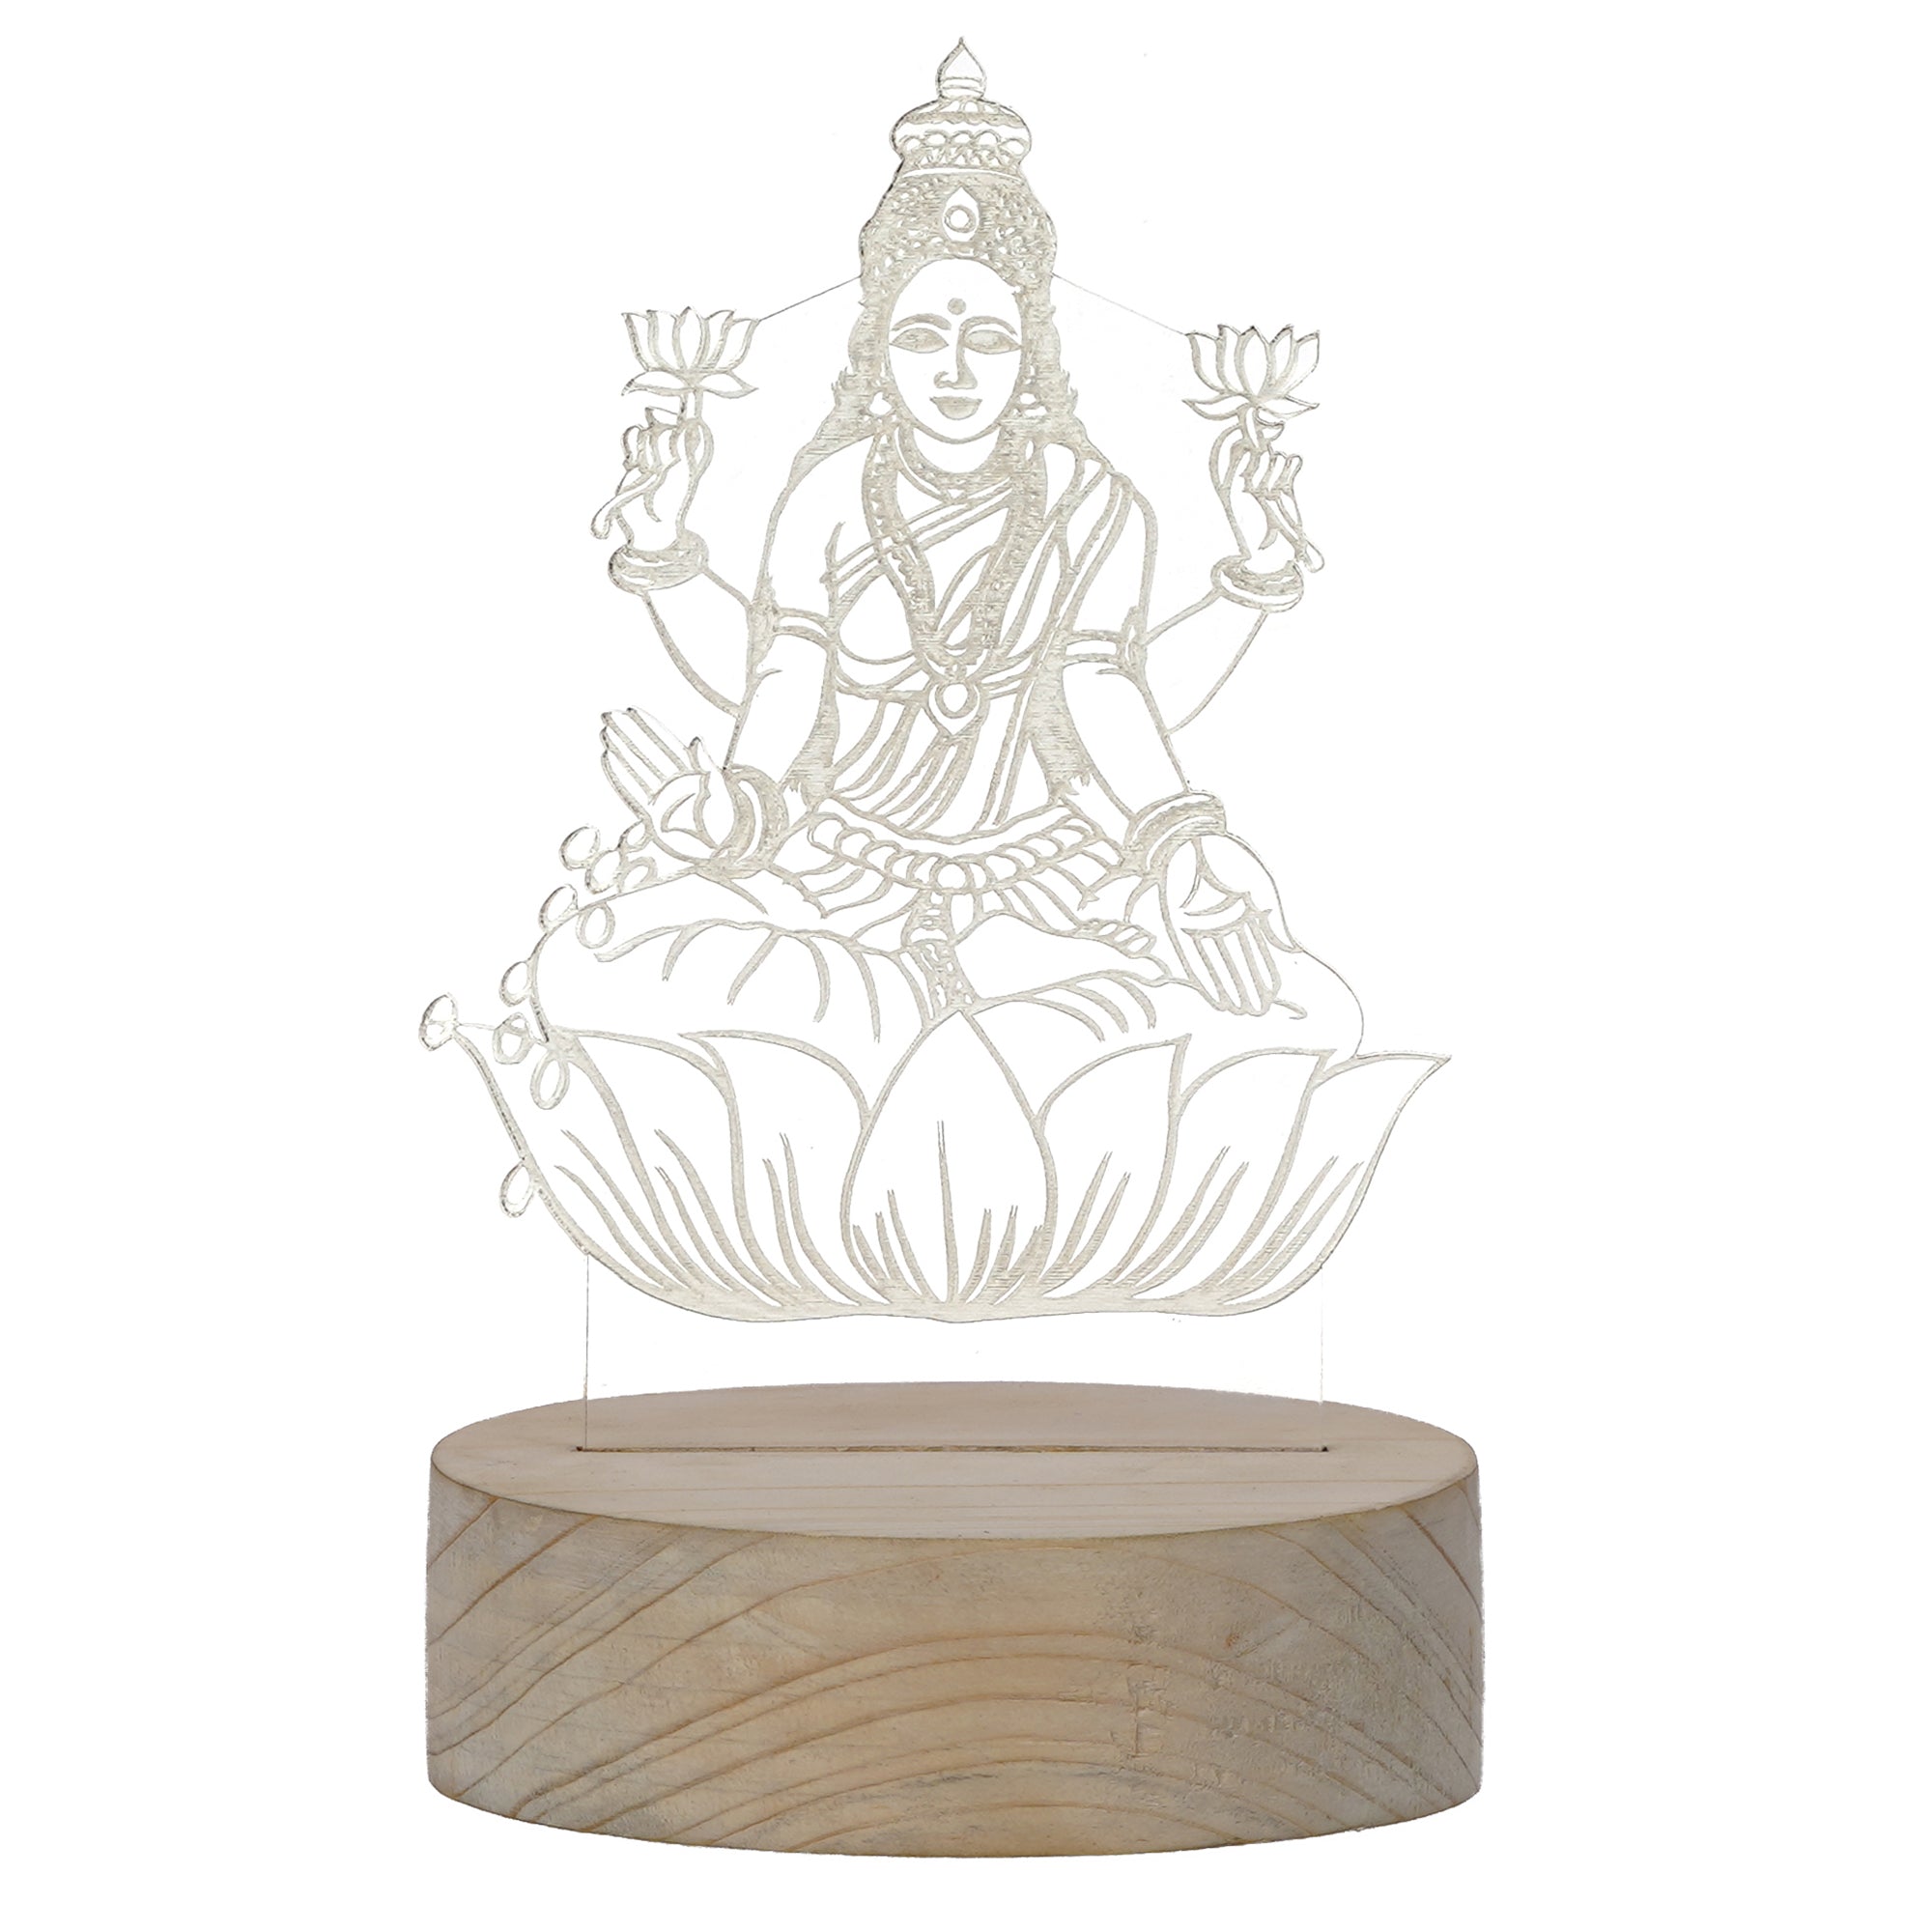 Goddess Laxmi Design Carved on Acrylic & Wood Base Night Lamp 2